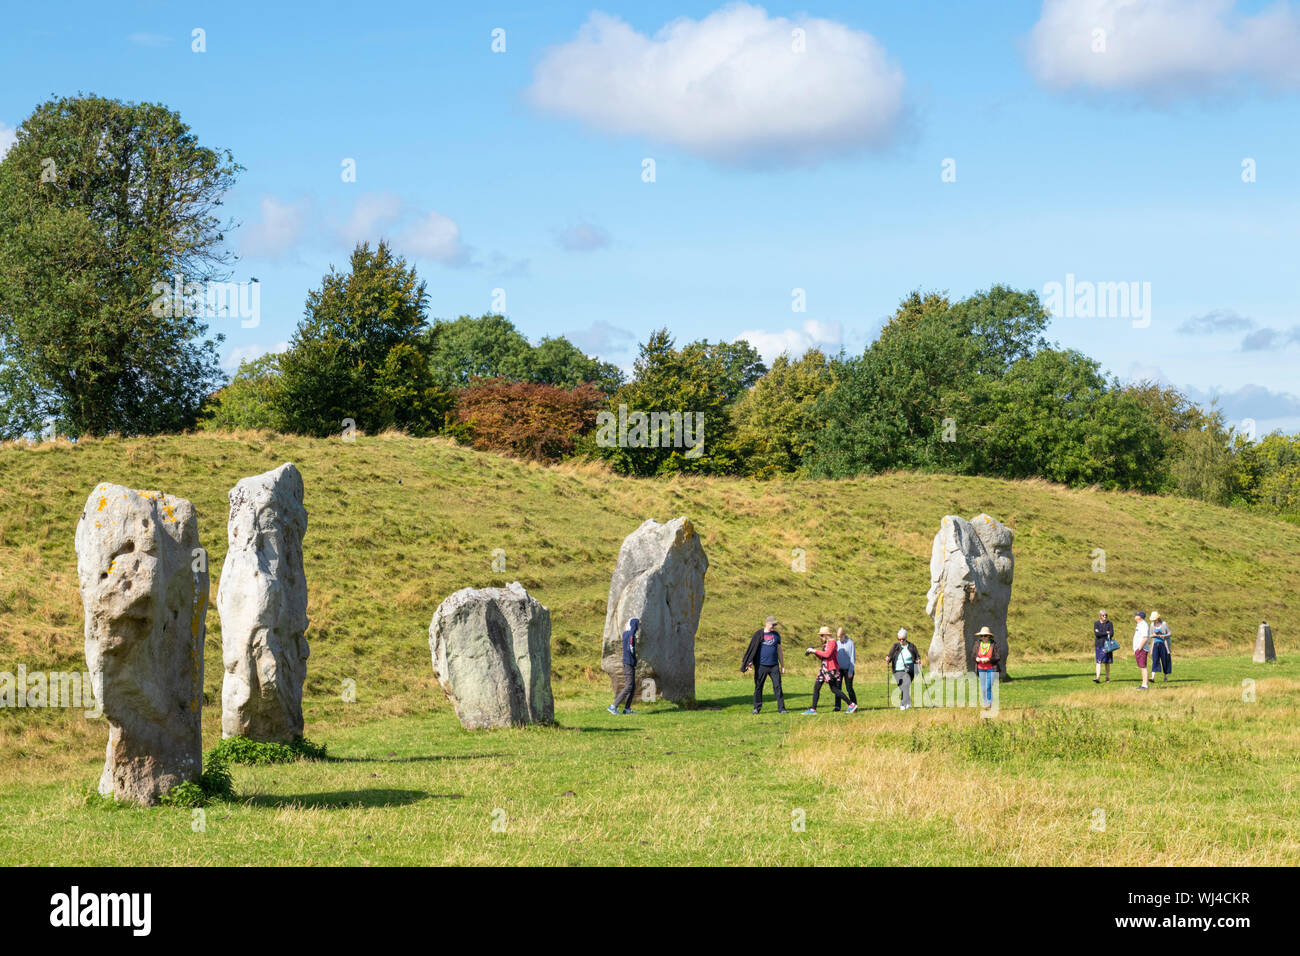 La gente a piedi in standing di Pietre di Avebury Stone Circle neolitico circolo di pietra di Avebury Wiltshire, Inghilterra UK GB Europa Foto Stock